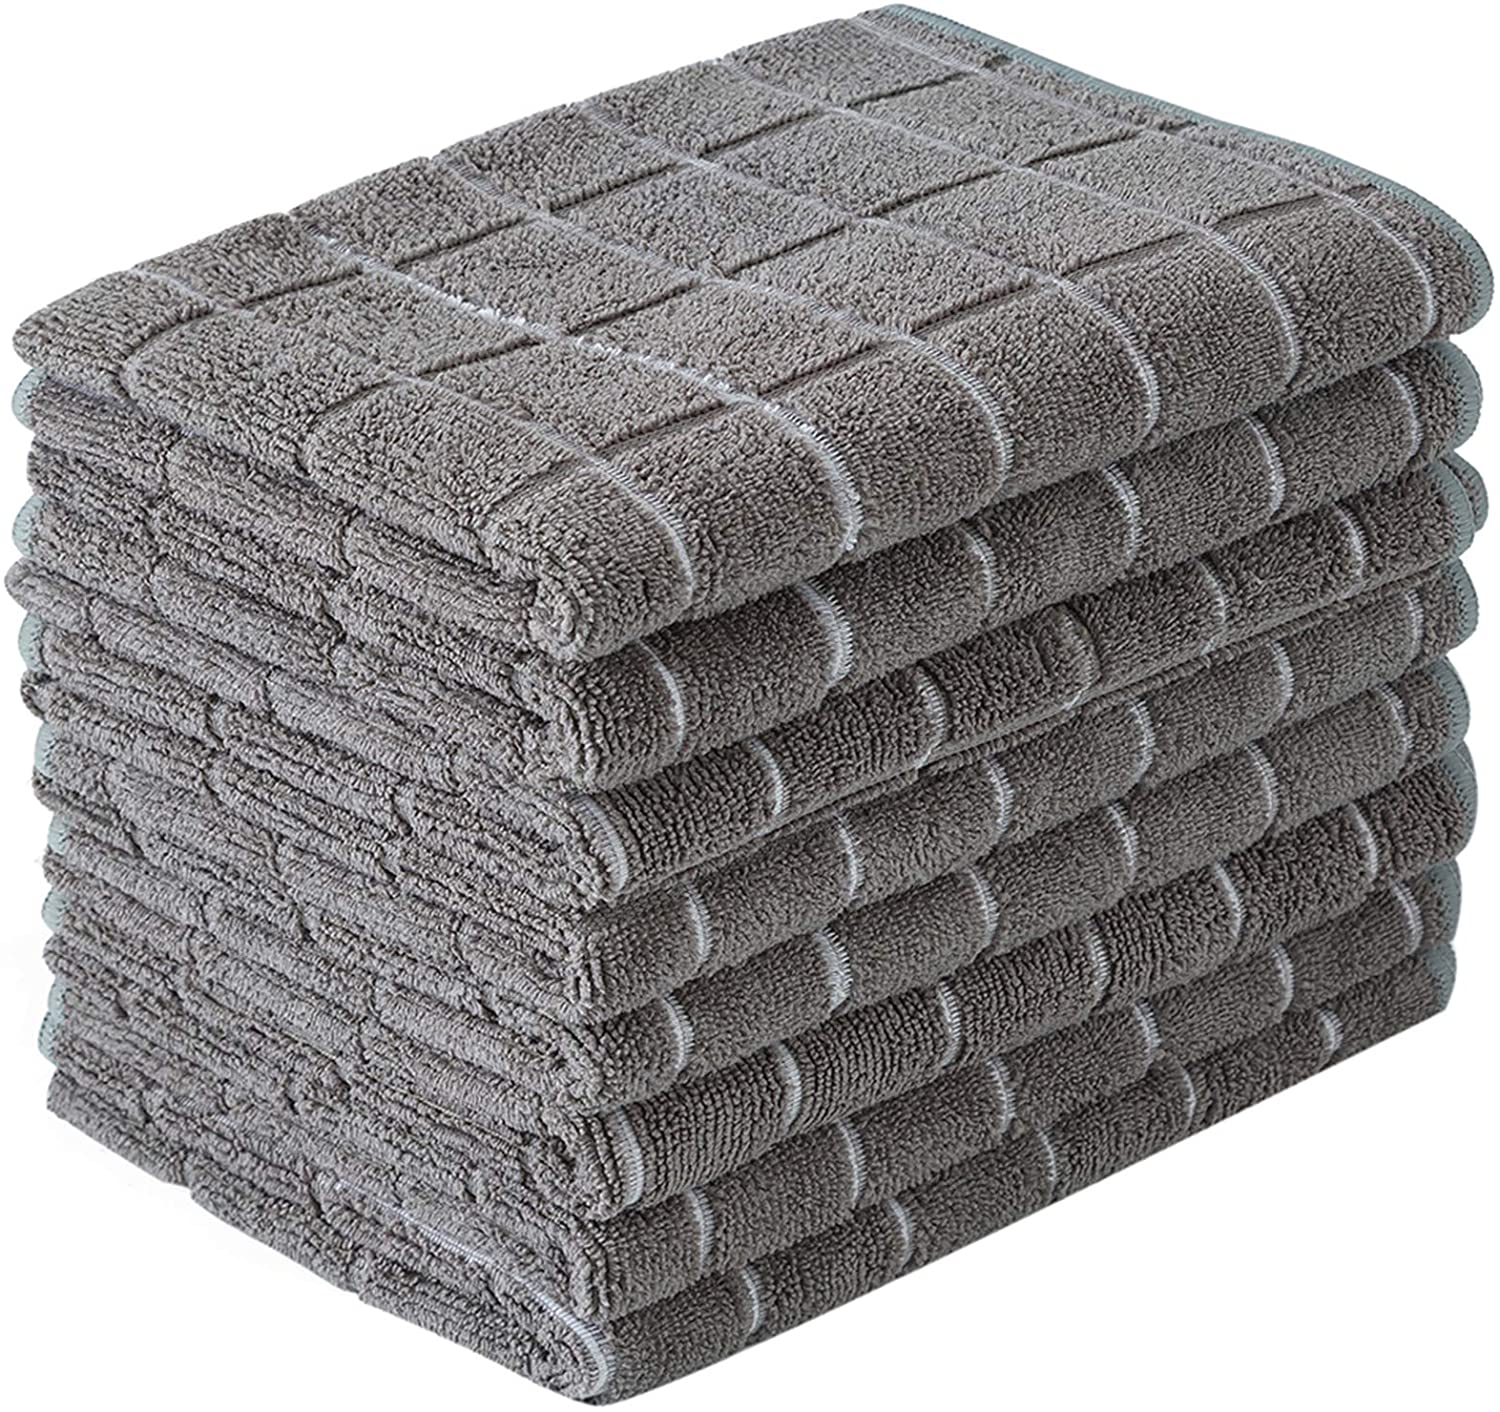 Microfiber Dish Towels – Soft, Super Absorbent